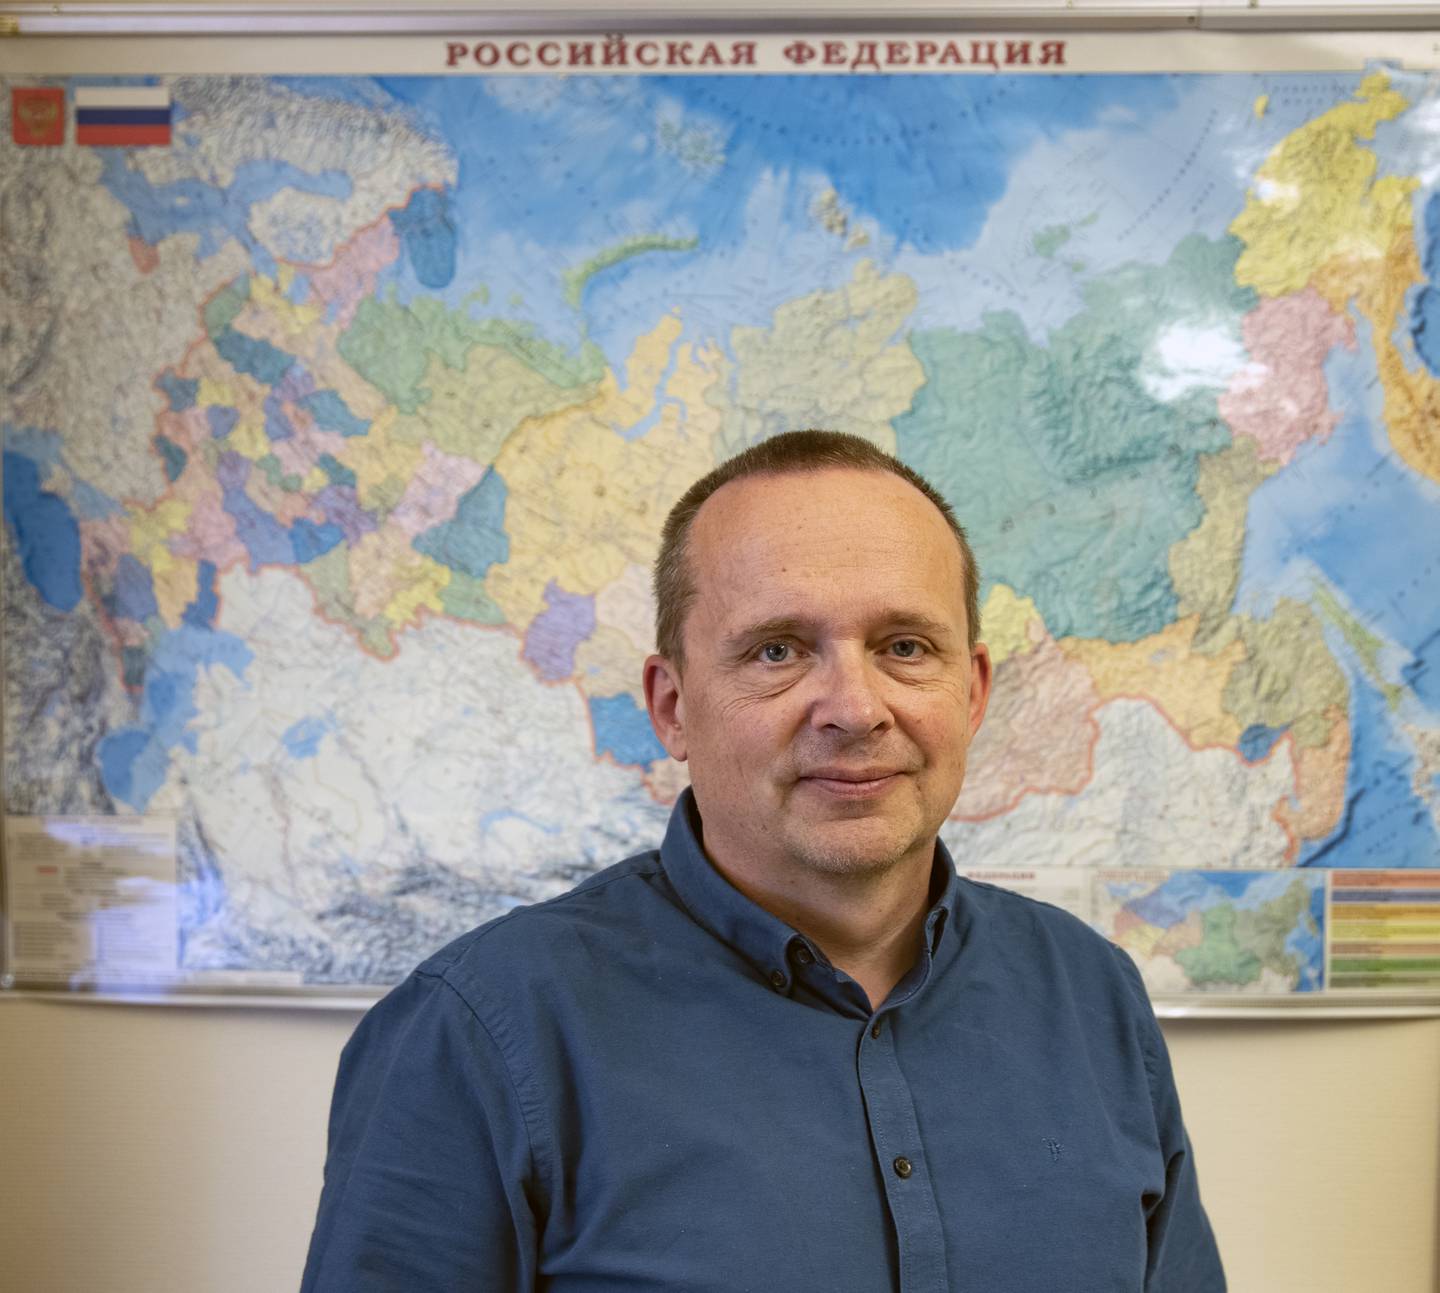 Sjefsforsker Tor Bukkvoll ved Forsvarets forskningsinstitutt (FFI) har fulgt russisk og ukrainsk sikkerhetspolitikk i flere tiår. Det siste året har vært spesielt for ham både profesjonelt og personlig.